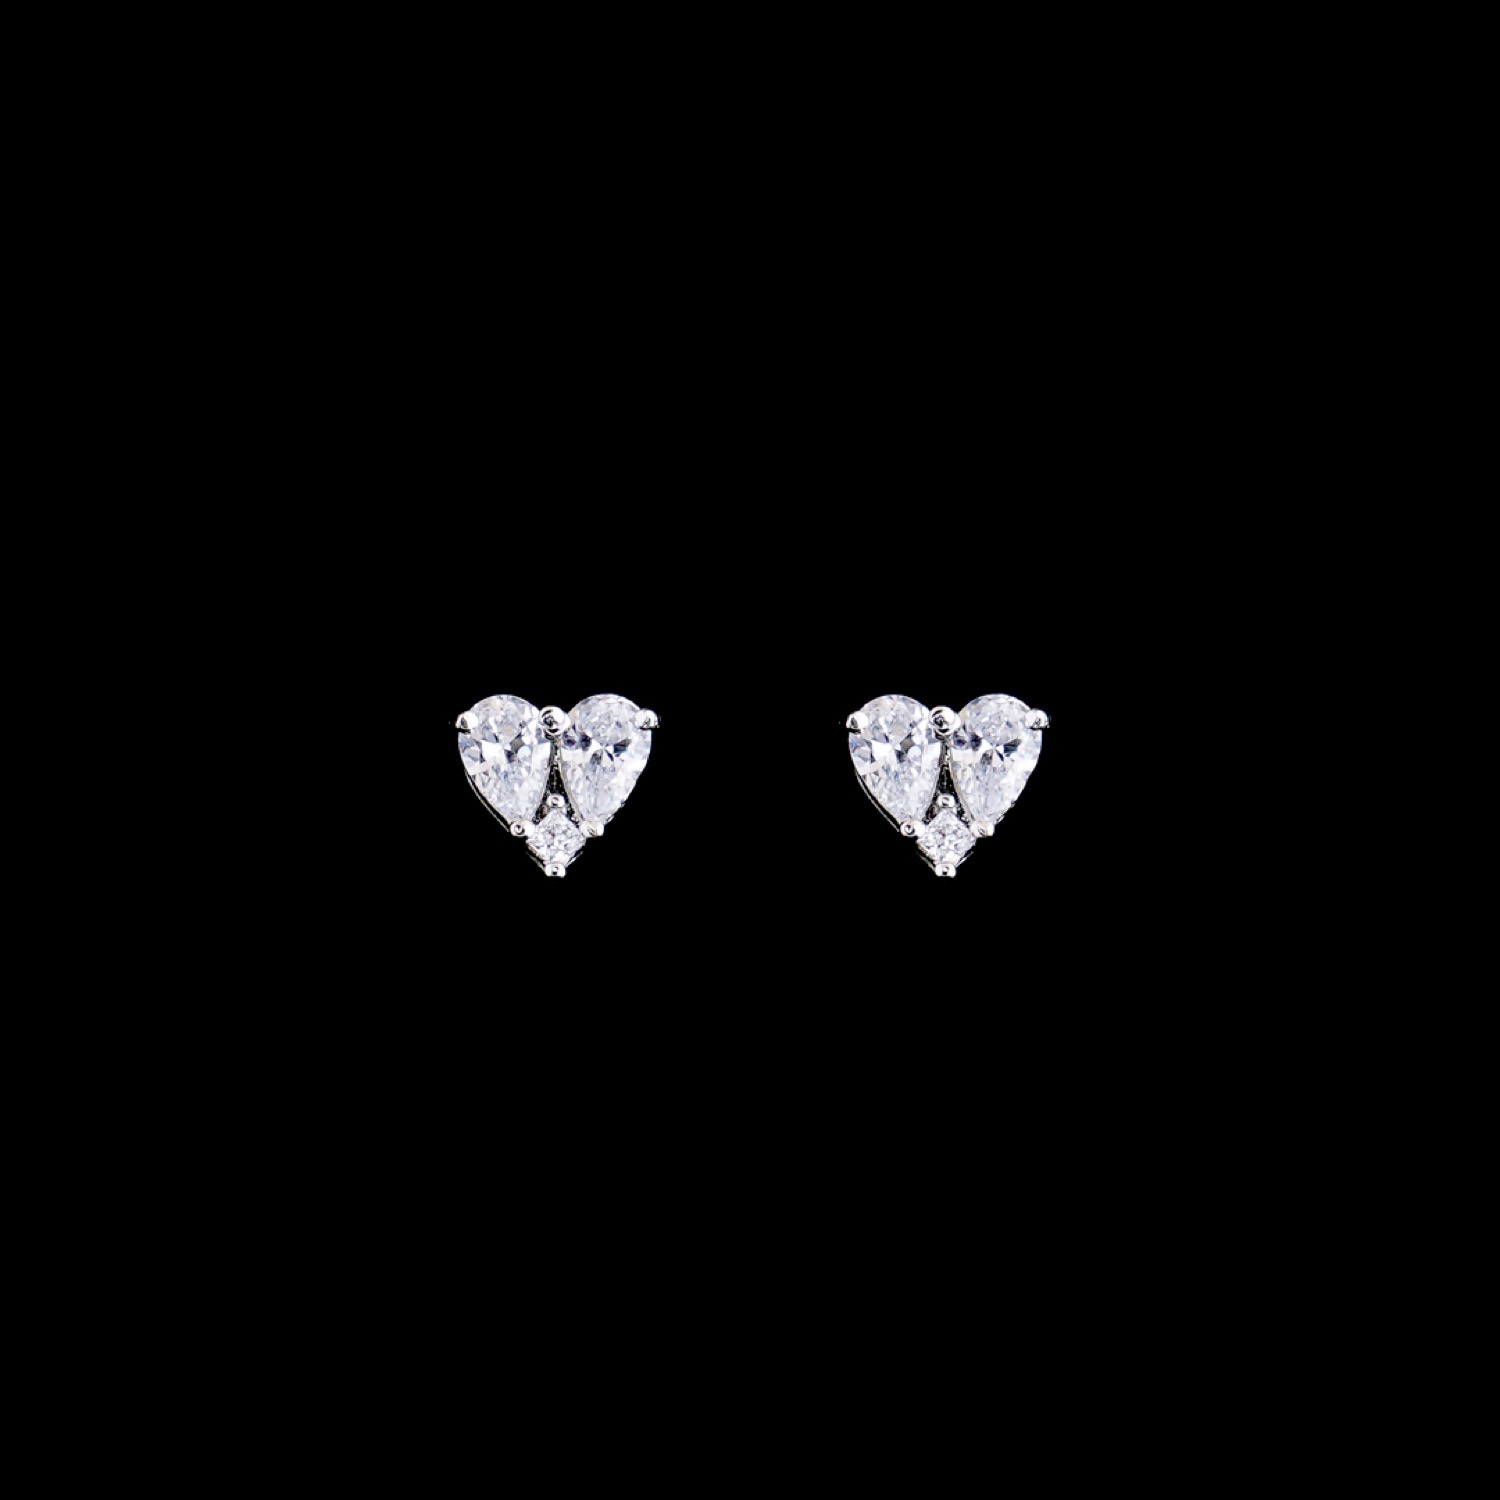 varam_swarovski_white_stone_heart_design_silver_earrings_37-1